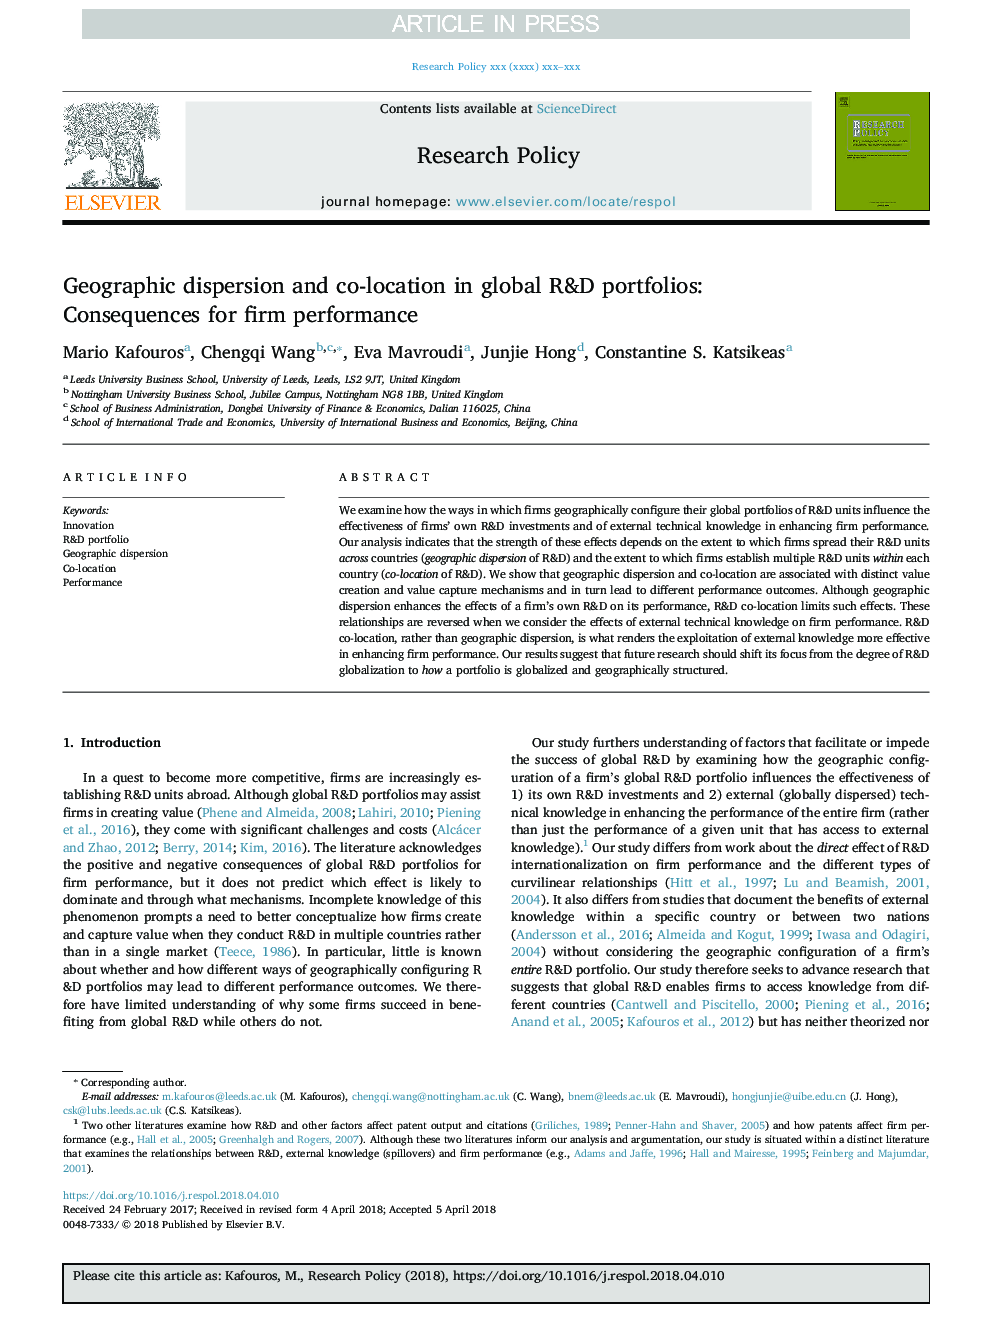 پراکندگی جغرافیایی و همپوشانی در پورتفولیوی تحقیق و توسعه جهانی: پیامدهای عملکرد شرکت 